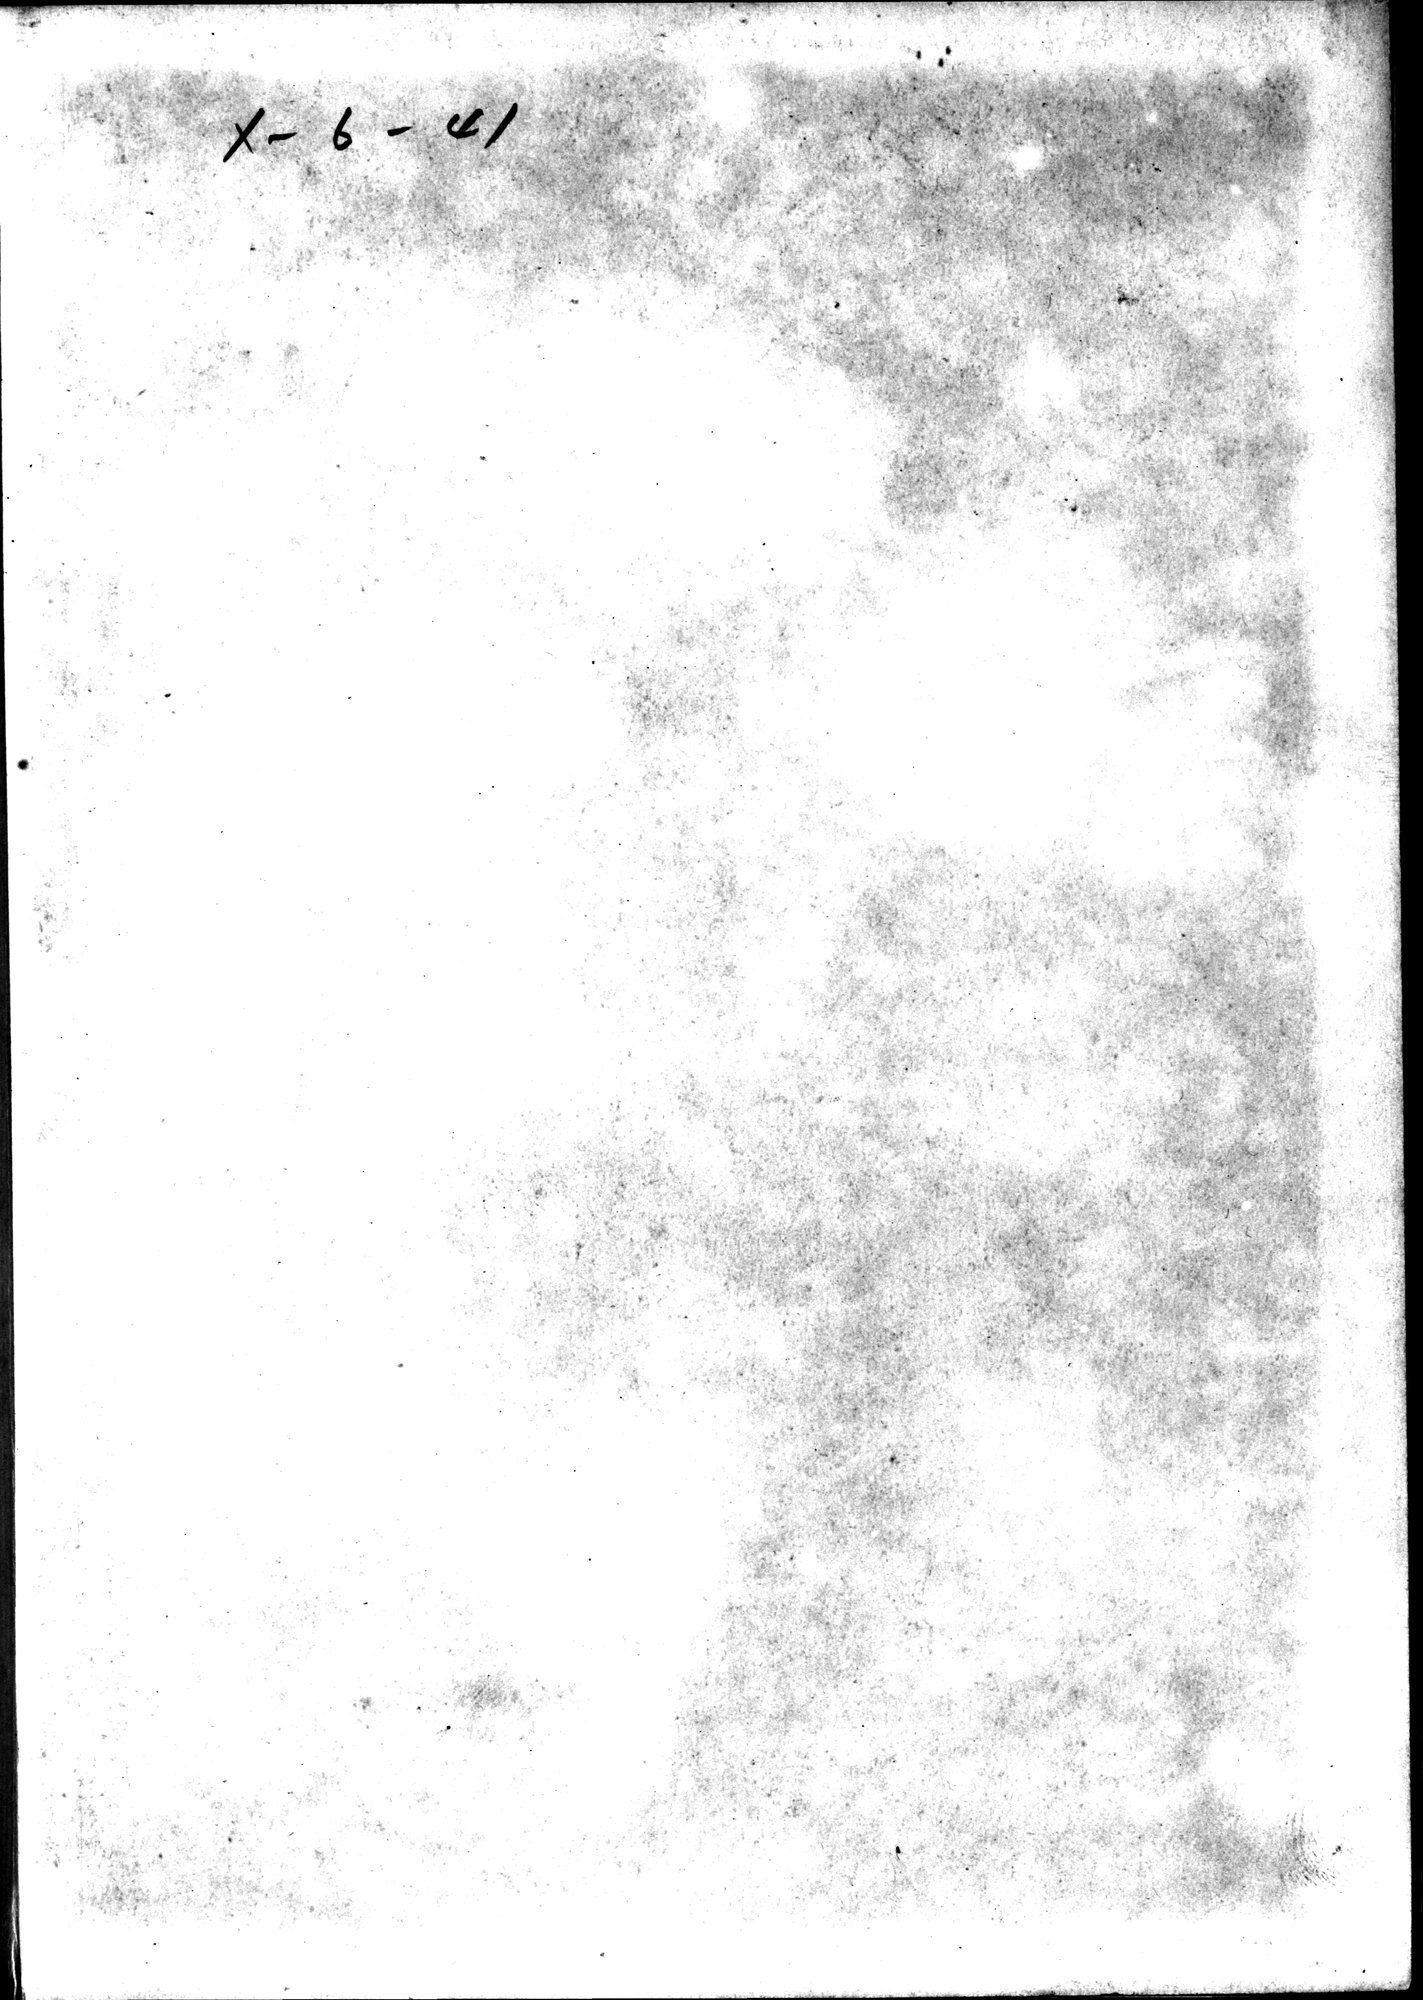 羽田博士史学論文集 : vol.1 / Page 830 (Grayscale High Resolution Image)